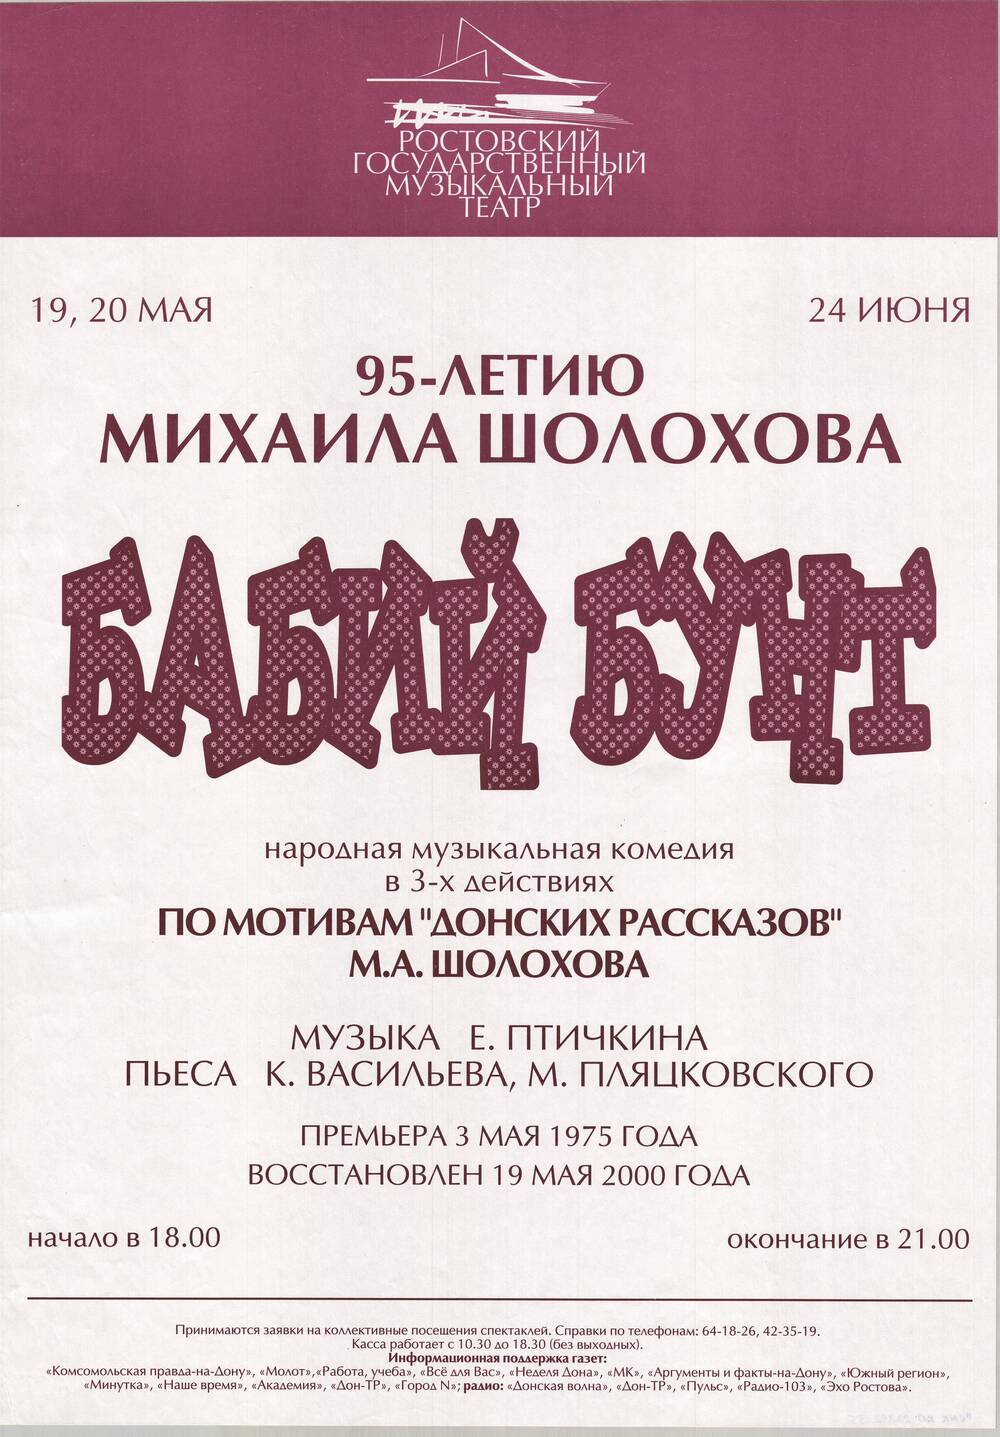 Афиша спектакля  Бабий бунт в Ростовском  государственном музыкальном театре.